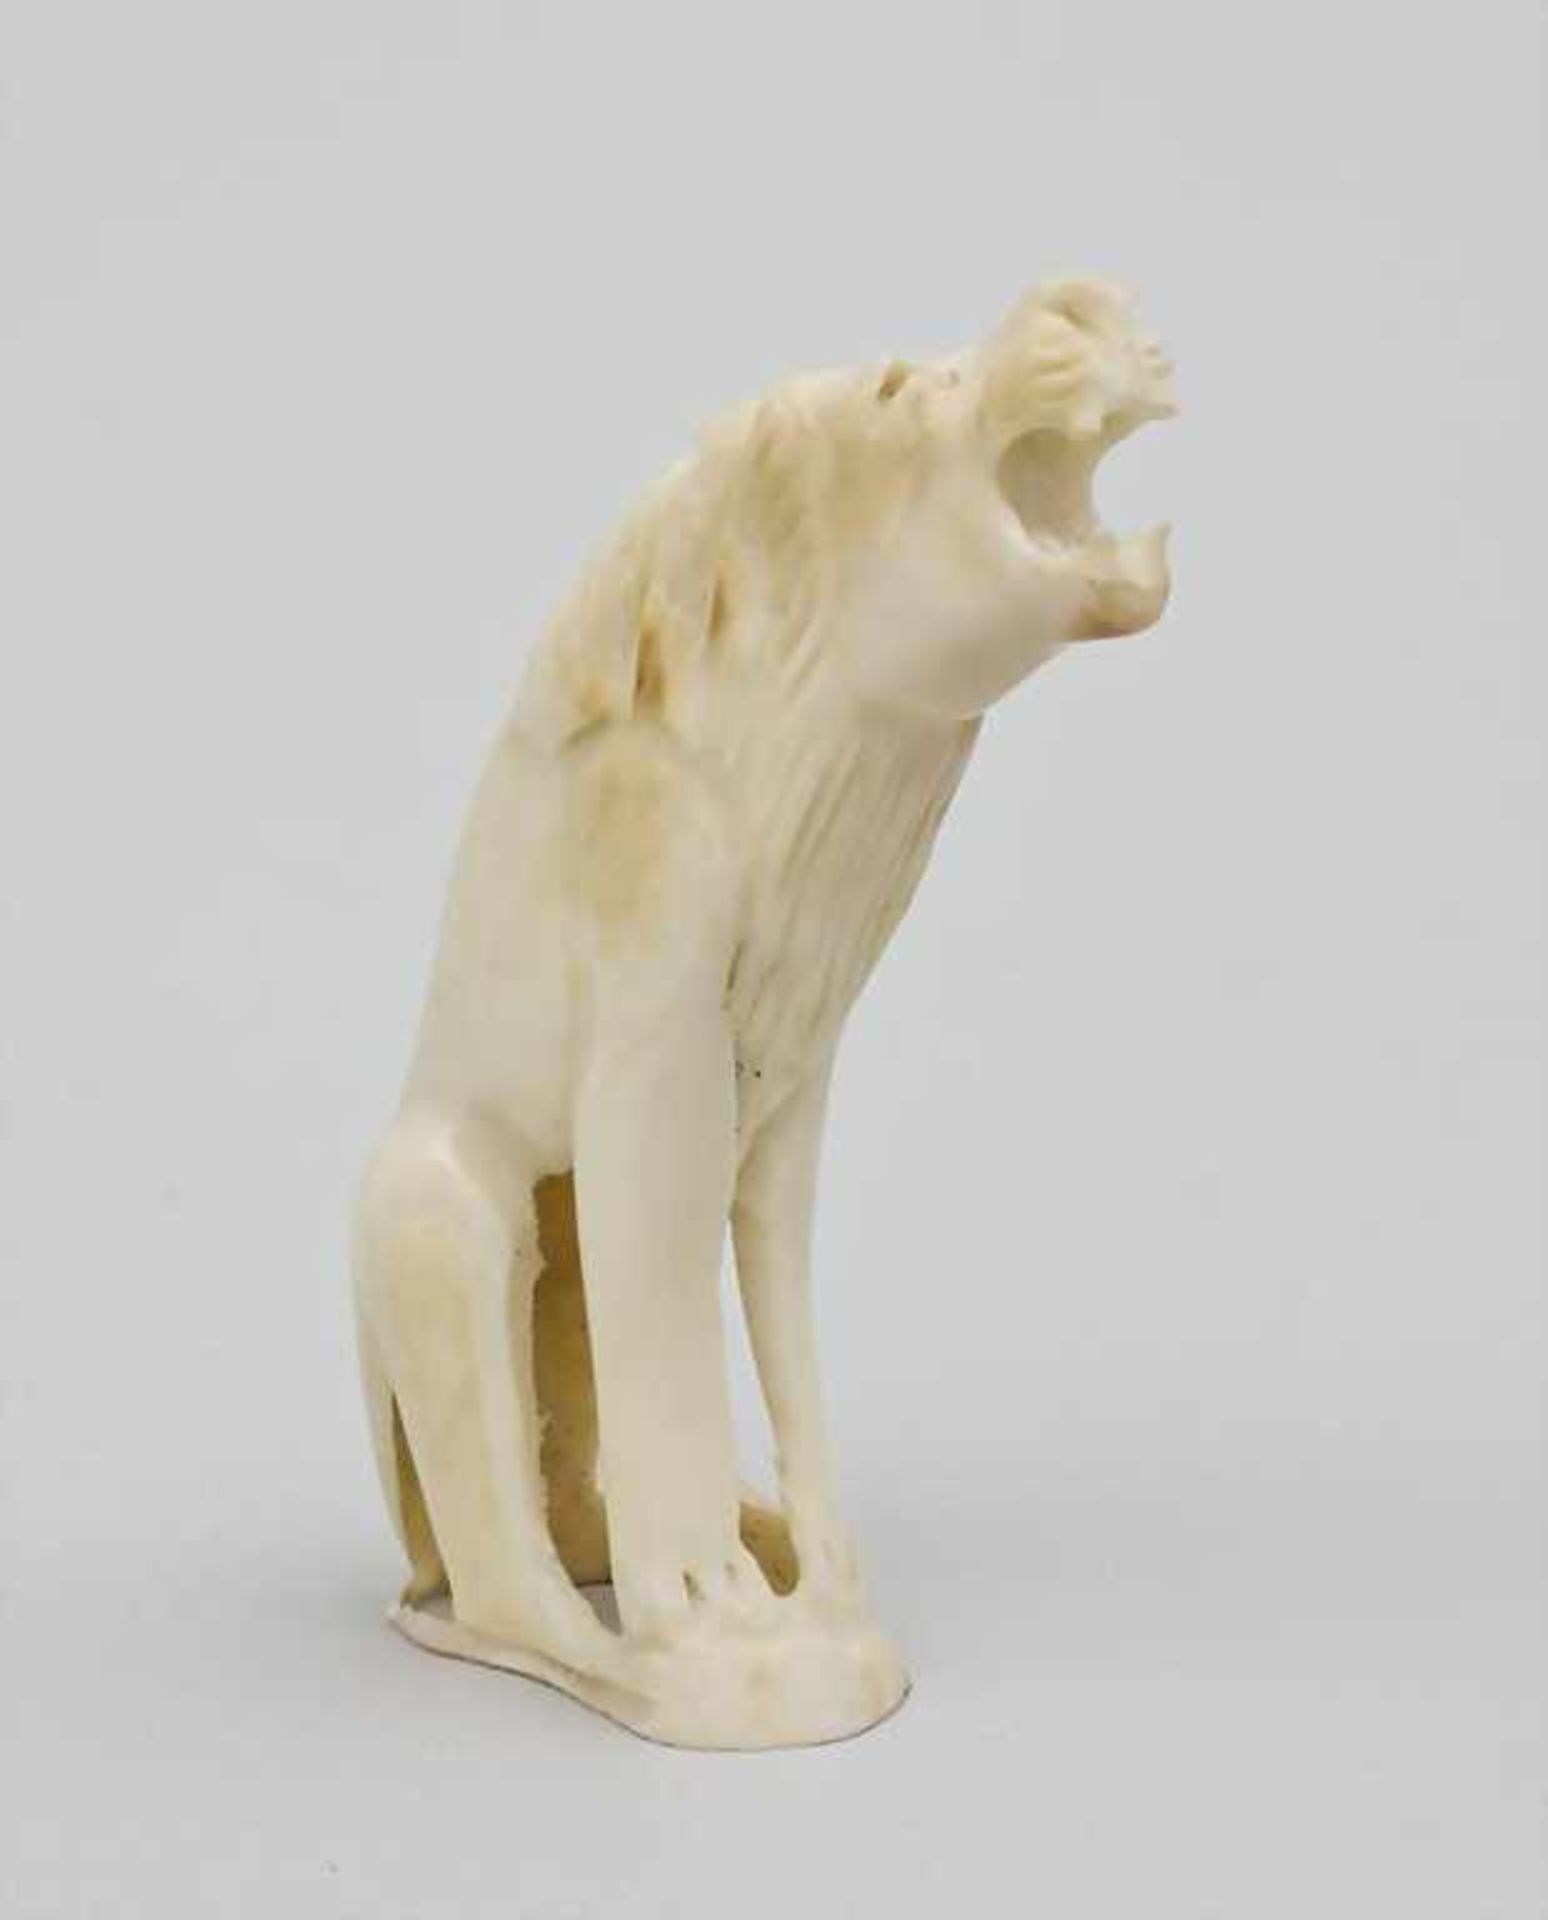 Brüllender Löwe/Lion, Zentralafrika, 1. Hälfte 20. Jh. plastische Darstellung eines sitzenden Löwen,